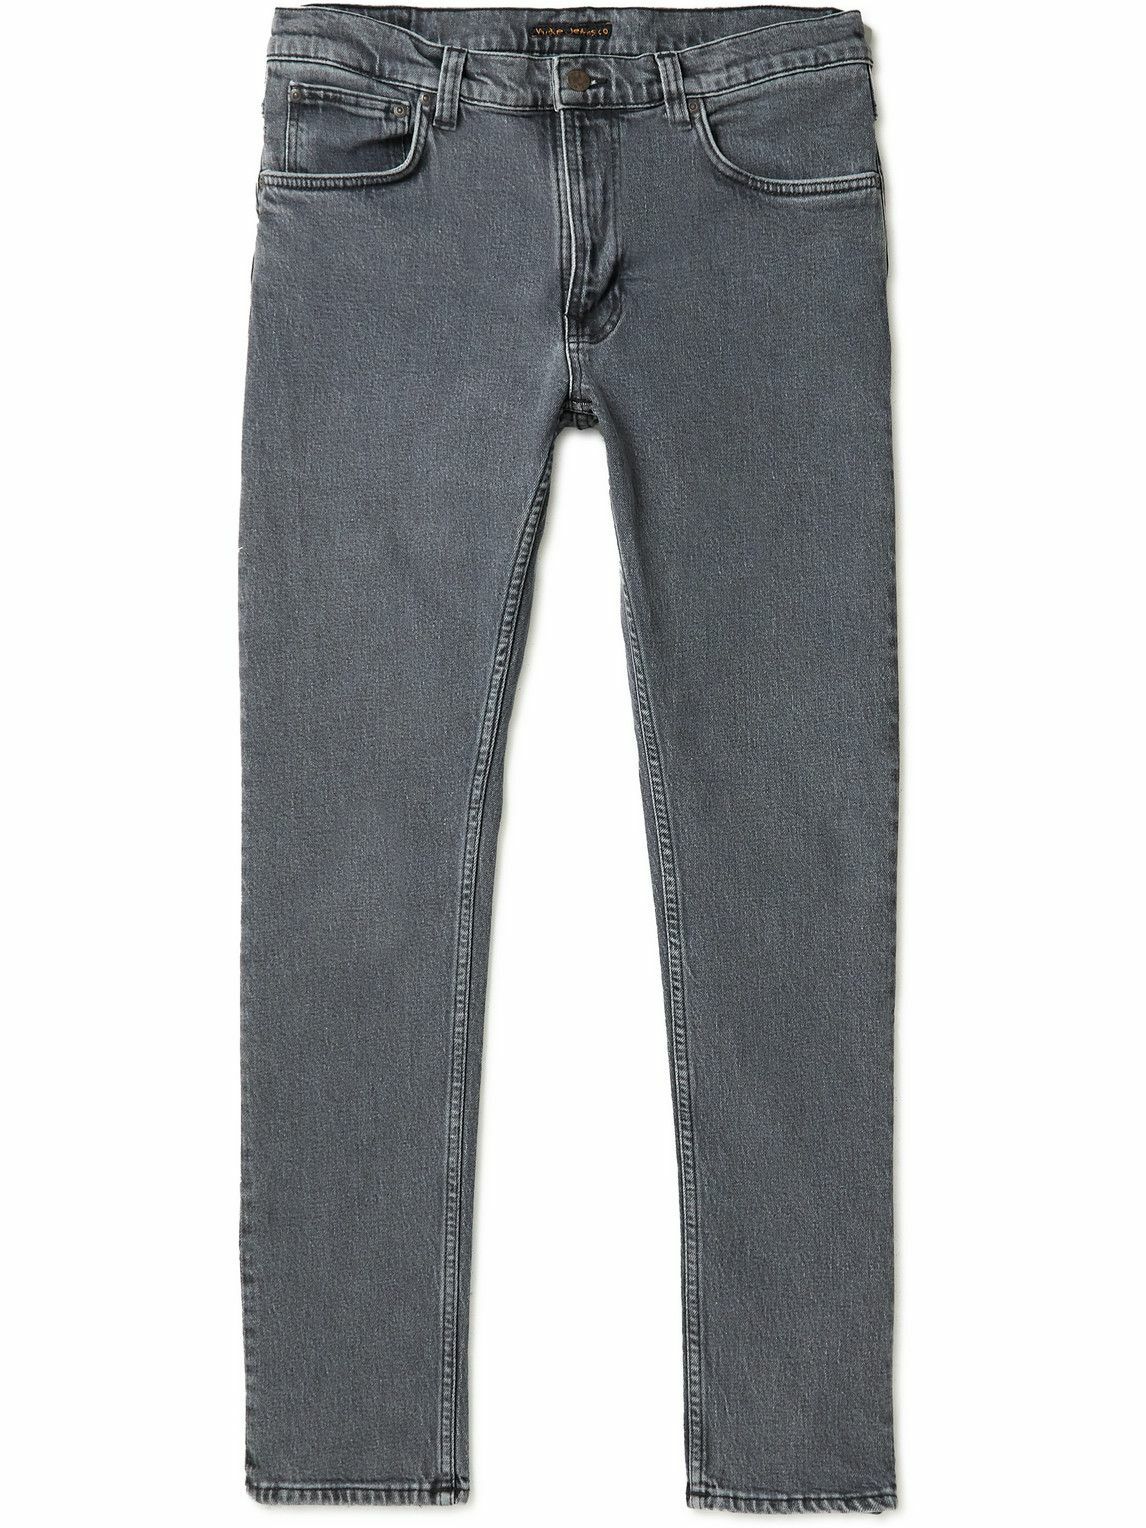 Nudie Jeans - Lean Dean Slim-Fit Organic Jeans - Gray Nudie Jeans Co